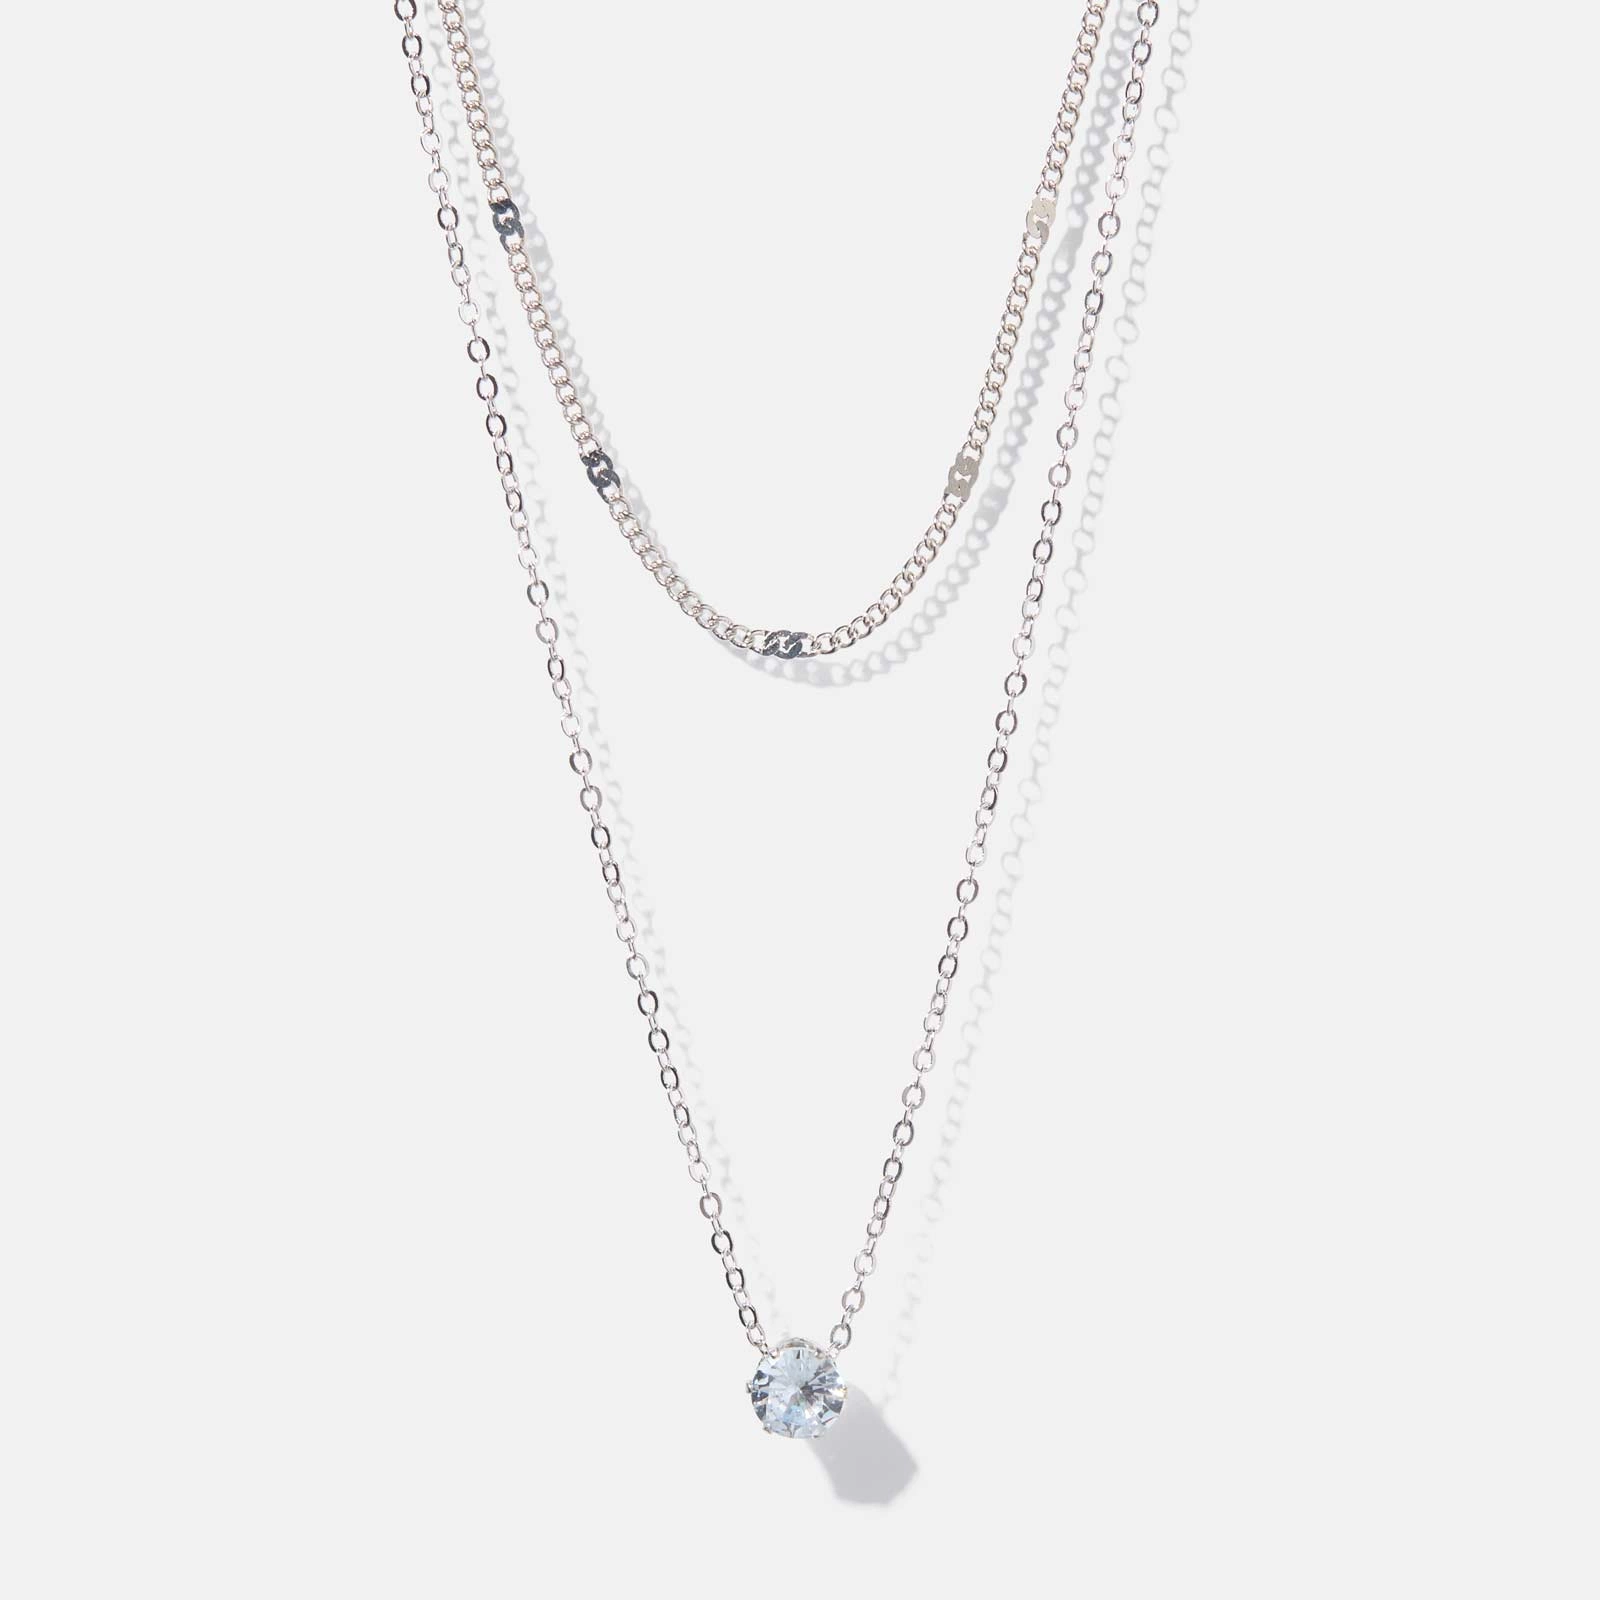 2-radigt silverfärgat halsband - kedja och berlock, 39+6cm